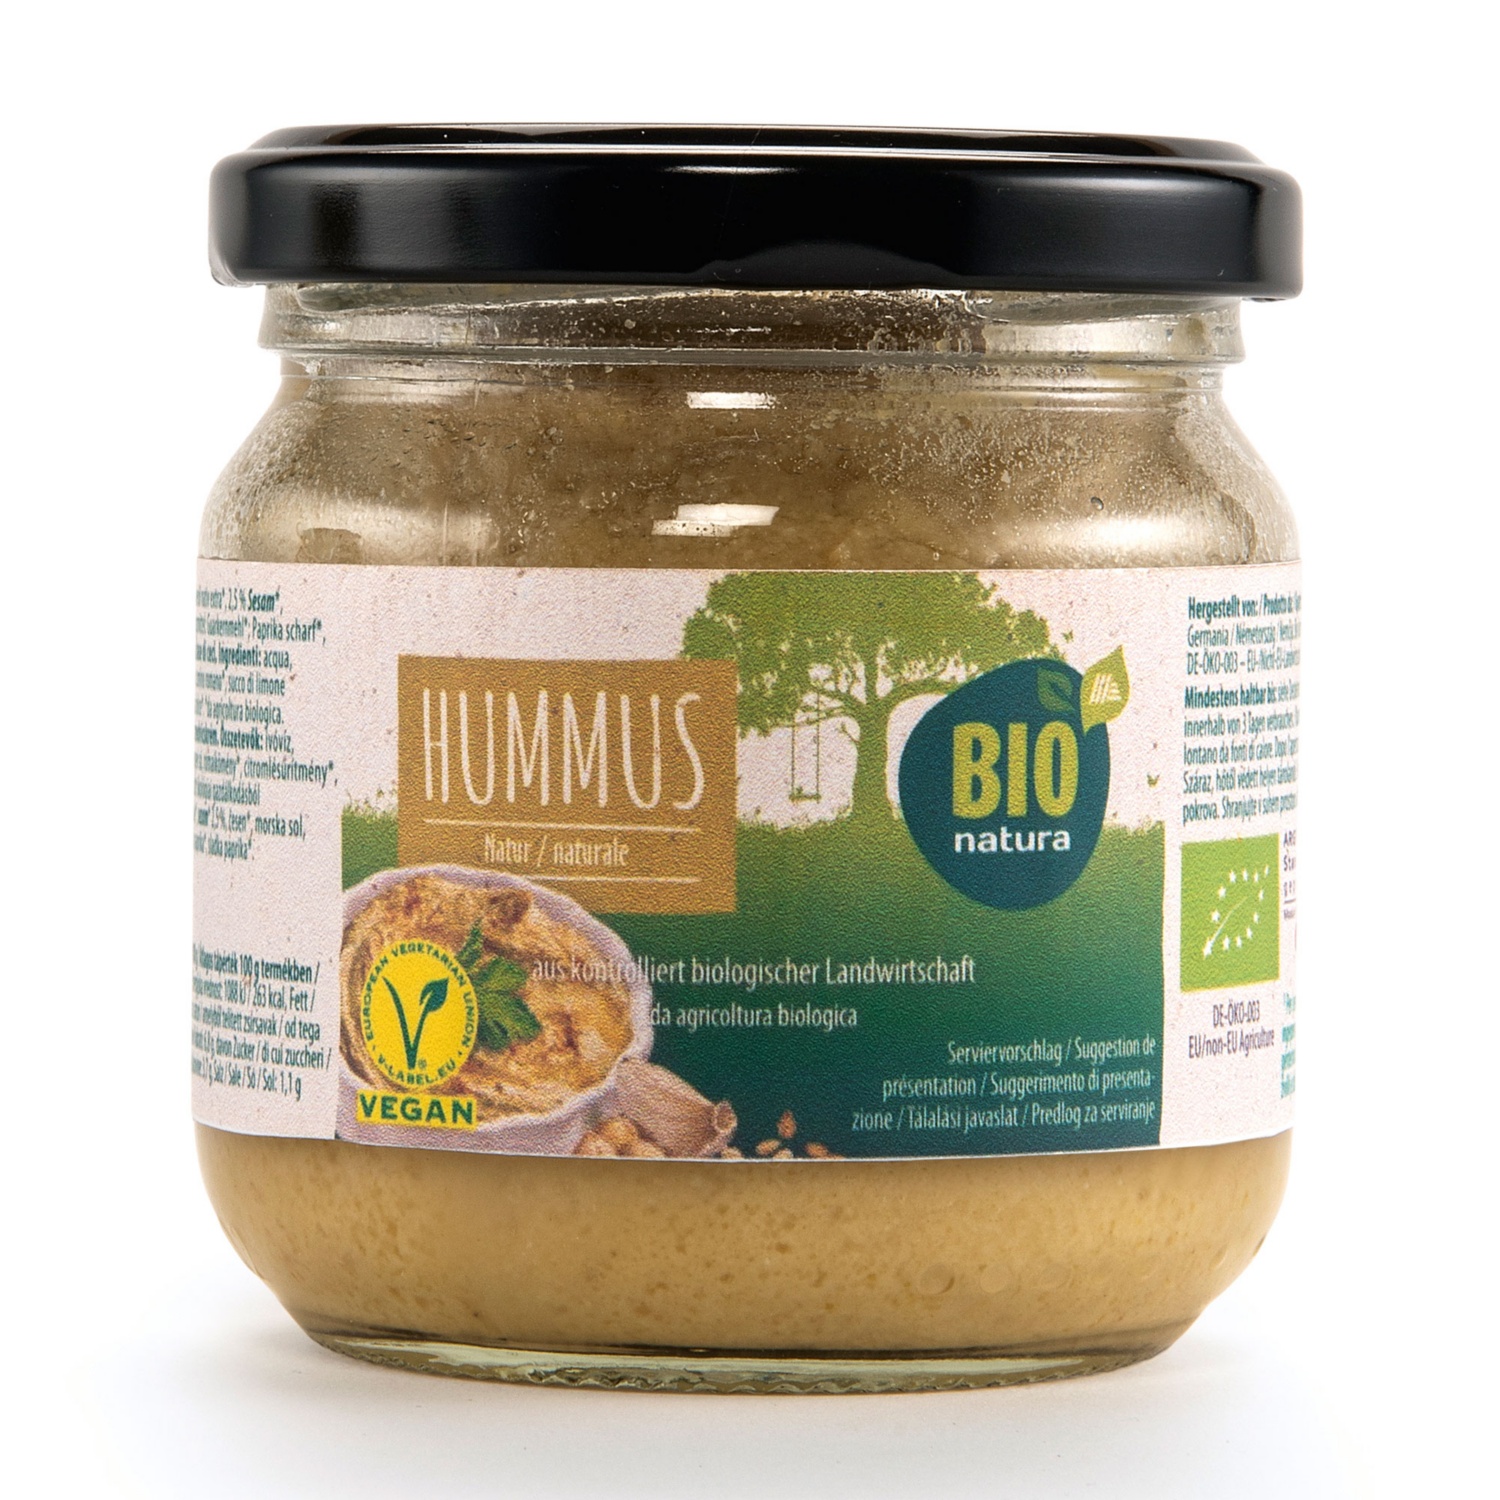 BIO NATURA Bio humus, klasičen